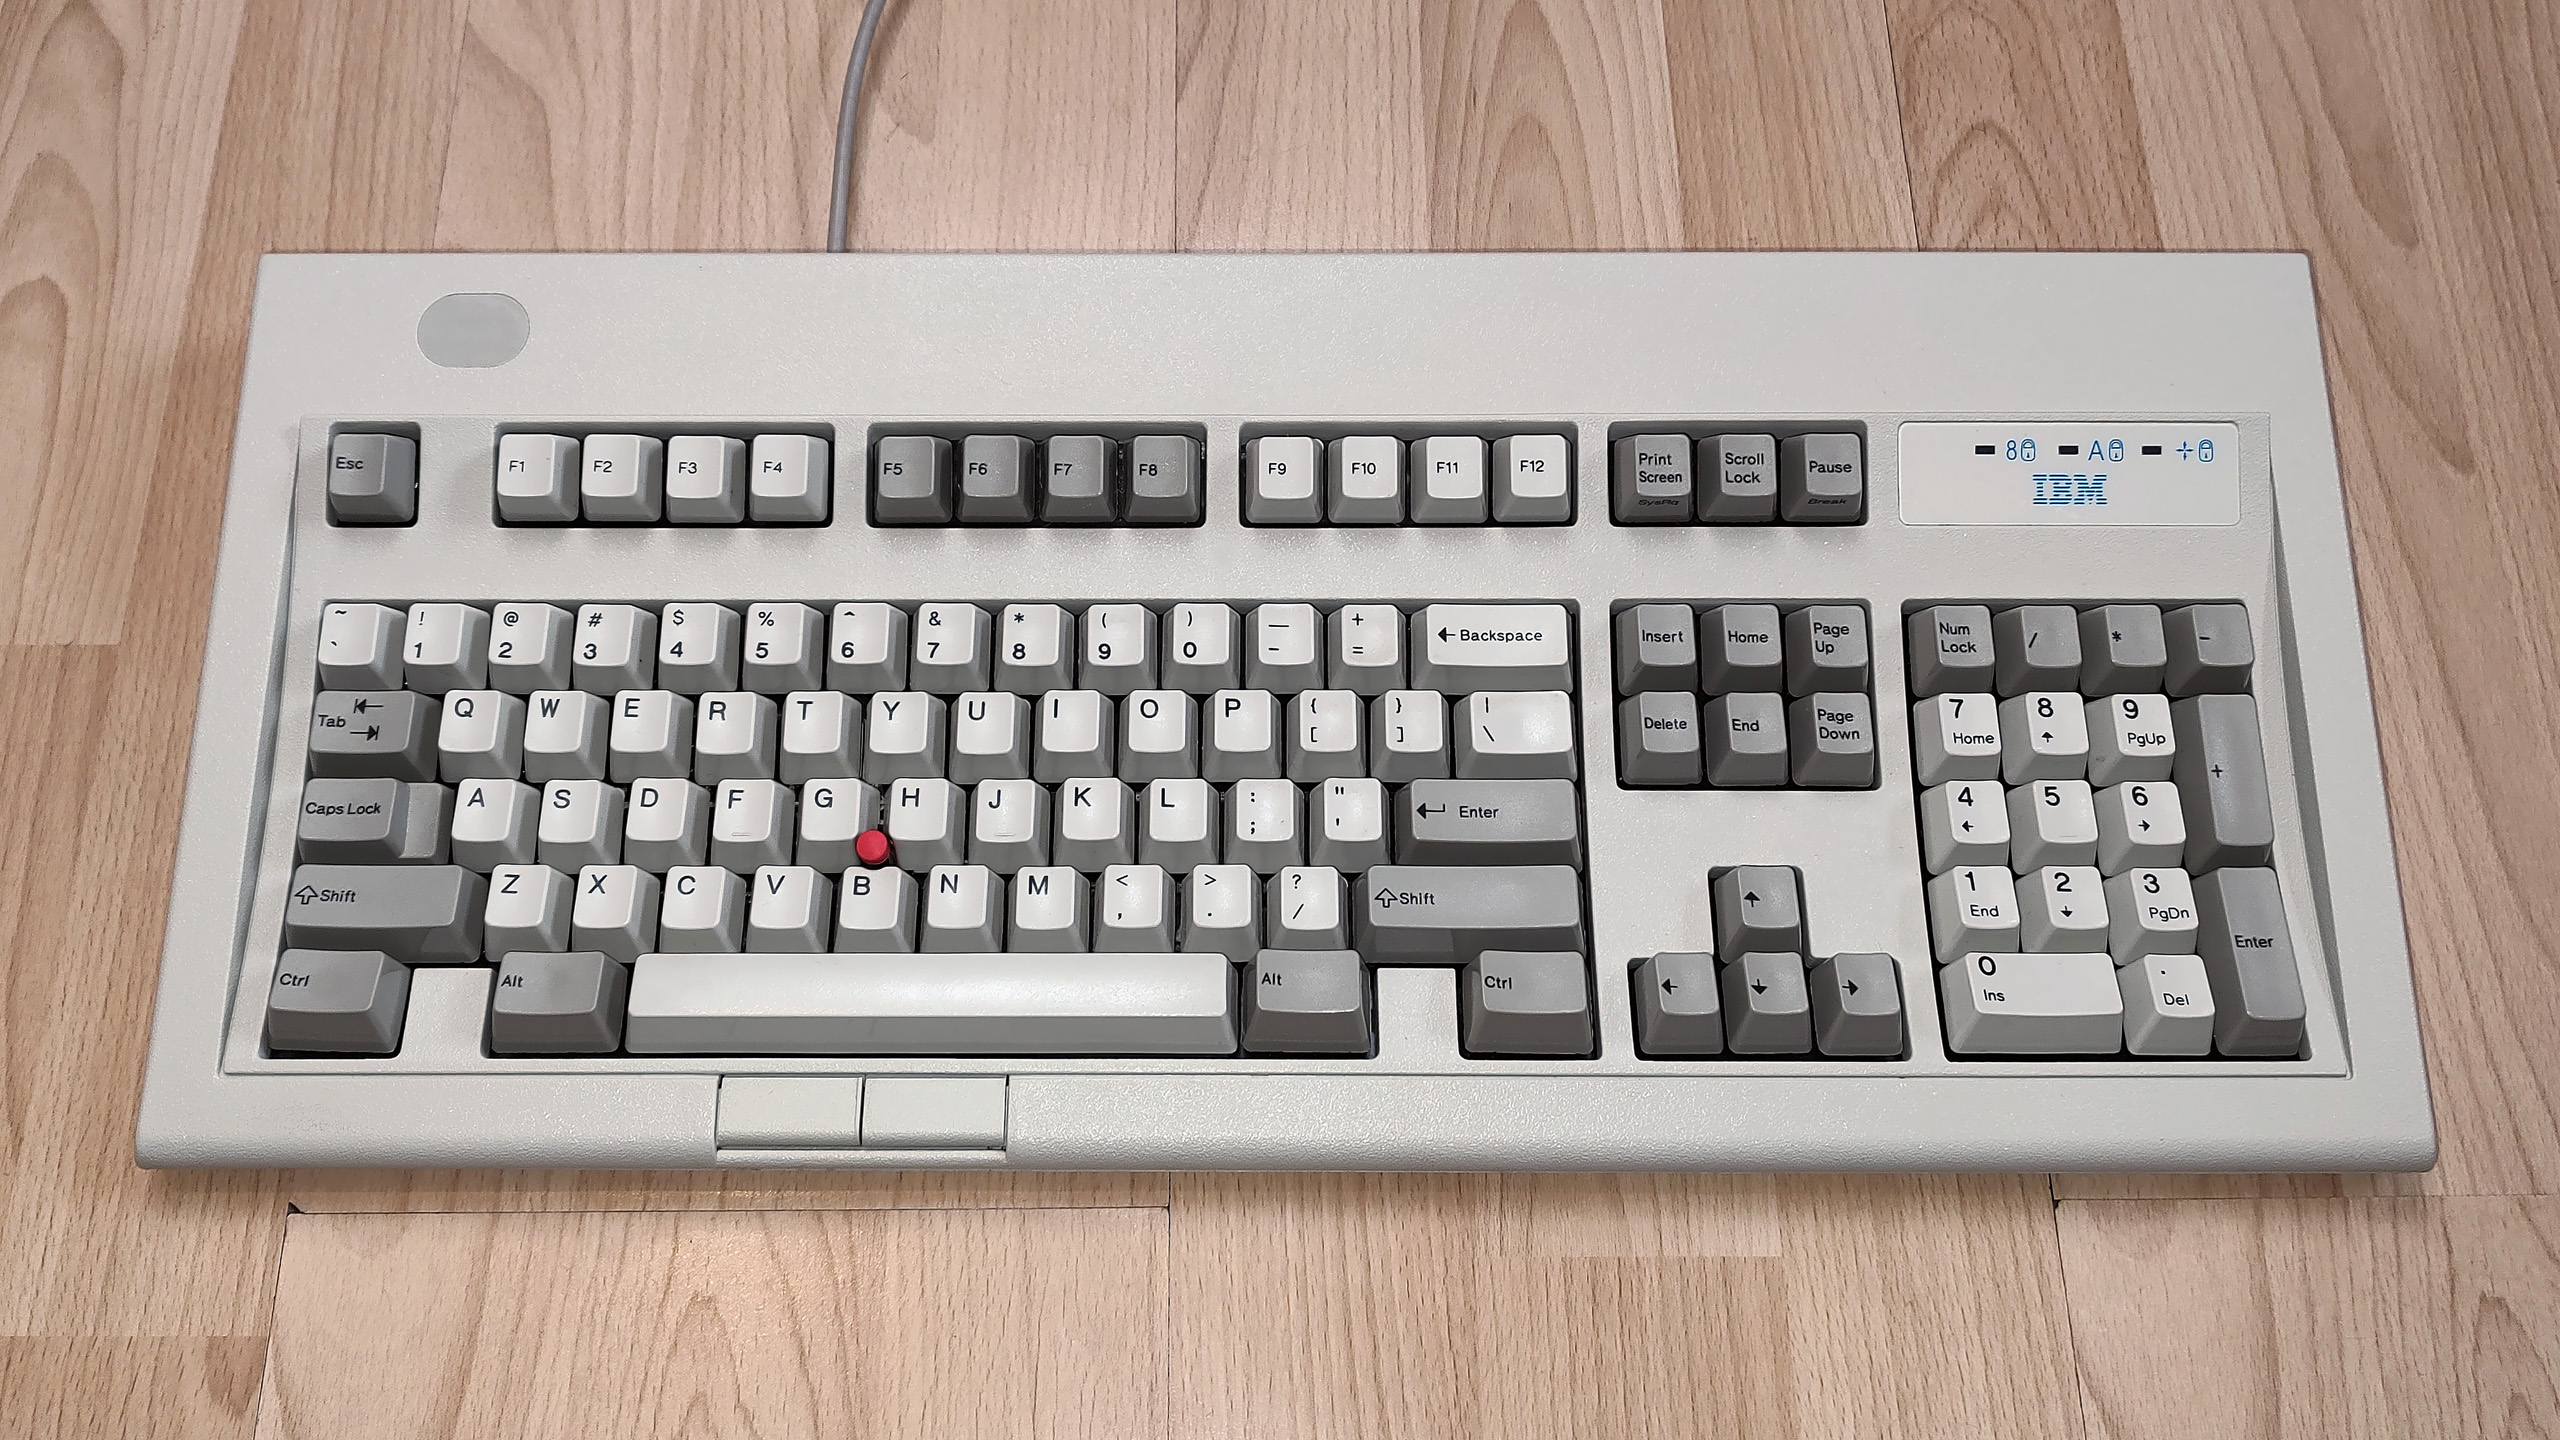 Admiral Shark's Keyboards (CC BY-NC-SA 4.0)